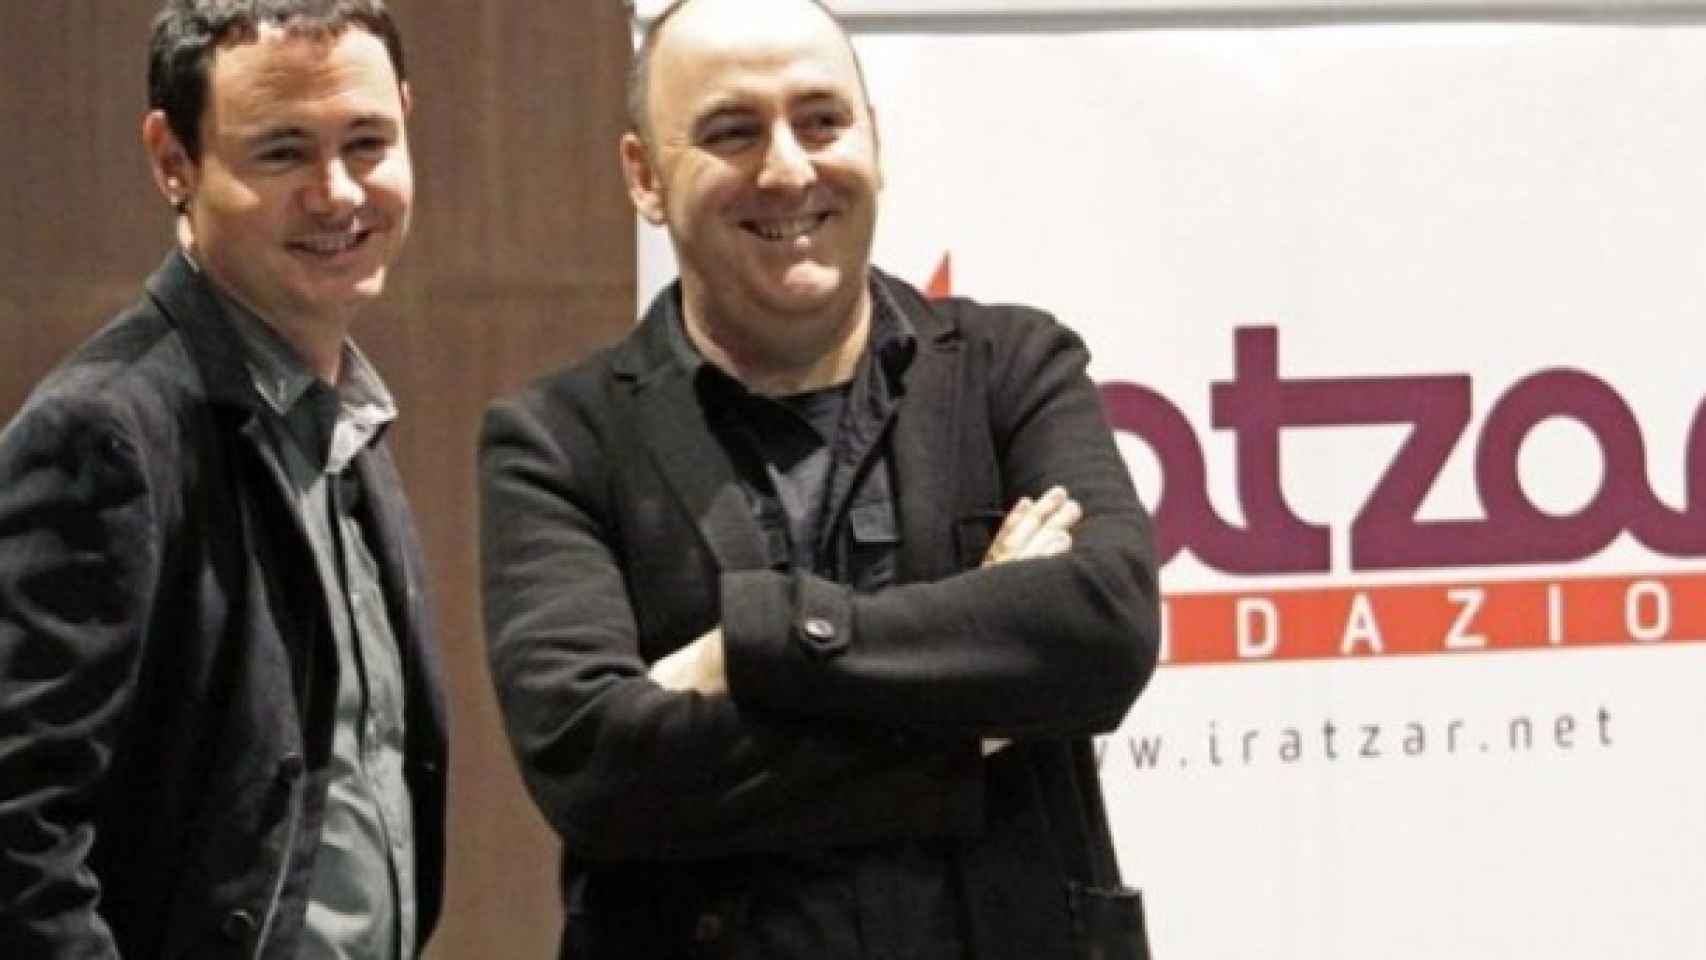 El director de Iratzar, Floren Aoiz, y el presidente de Sortu, Hasier Arraiz, en su creación en 2014.